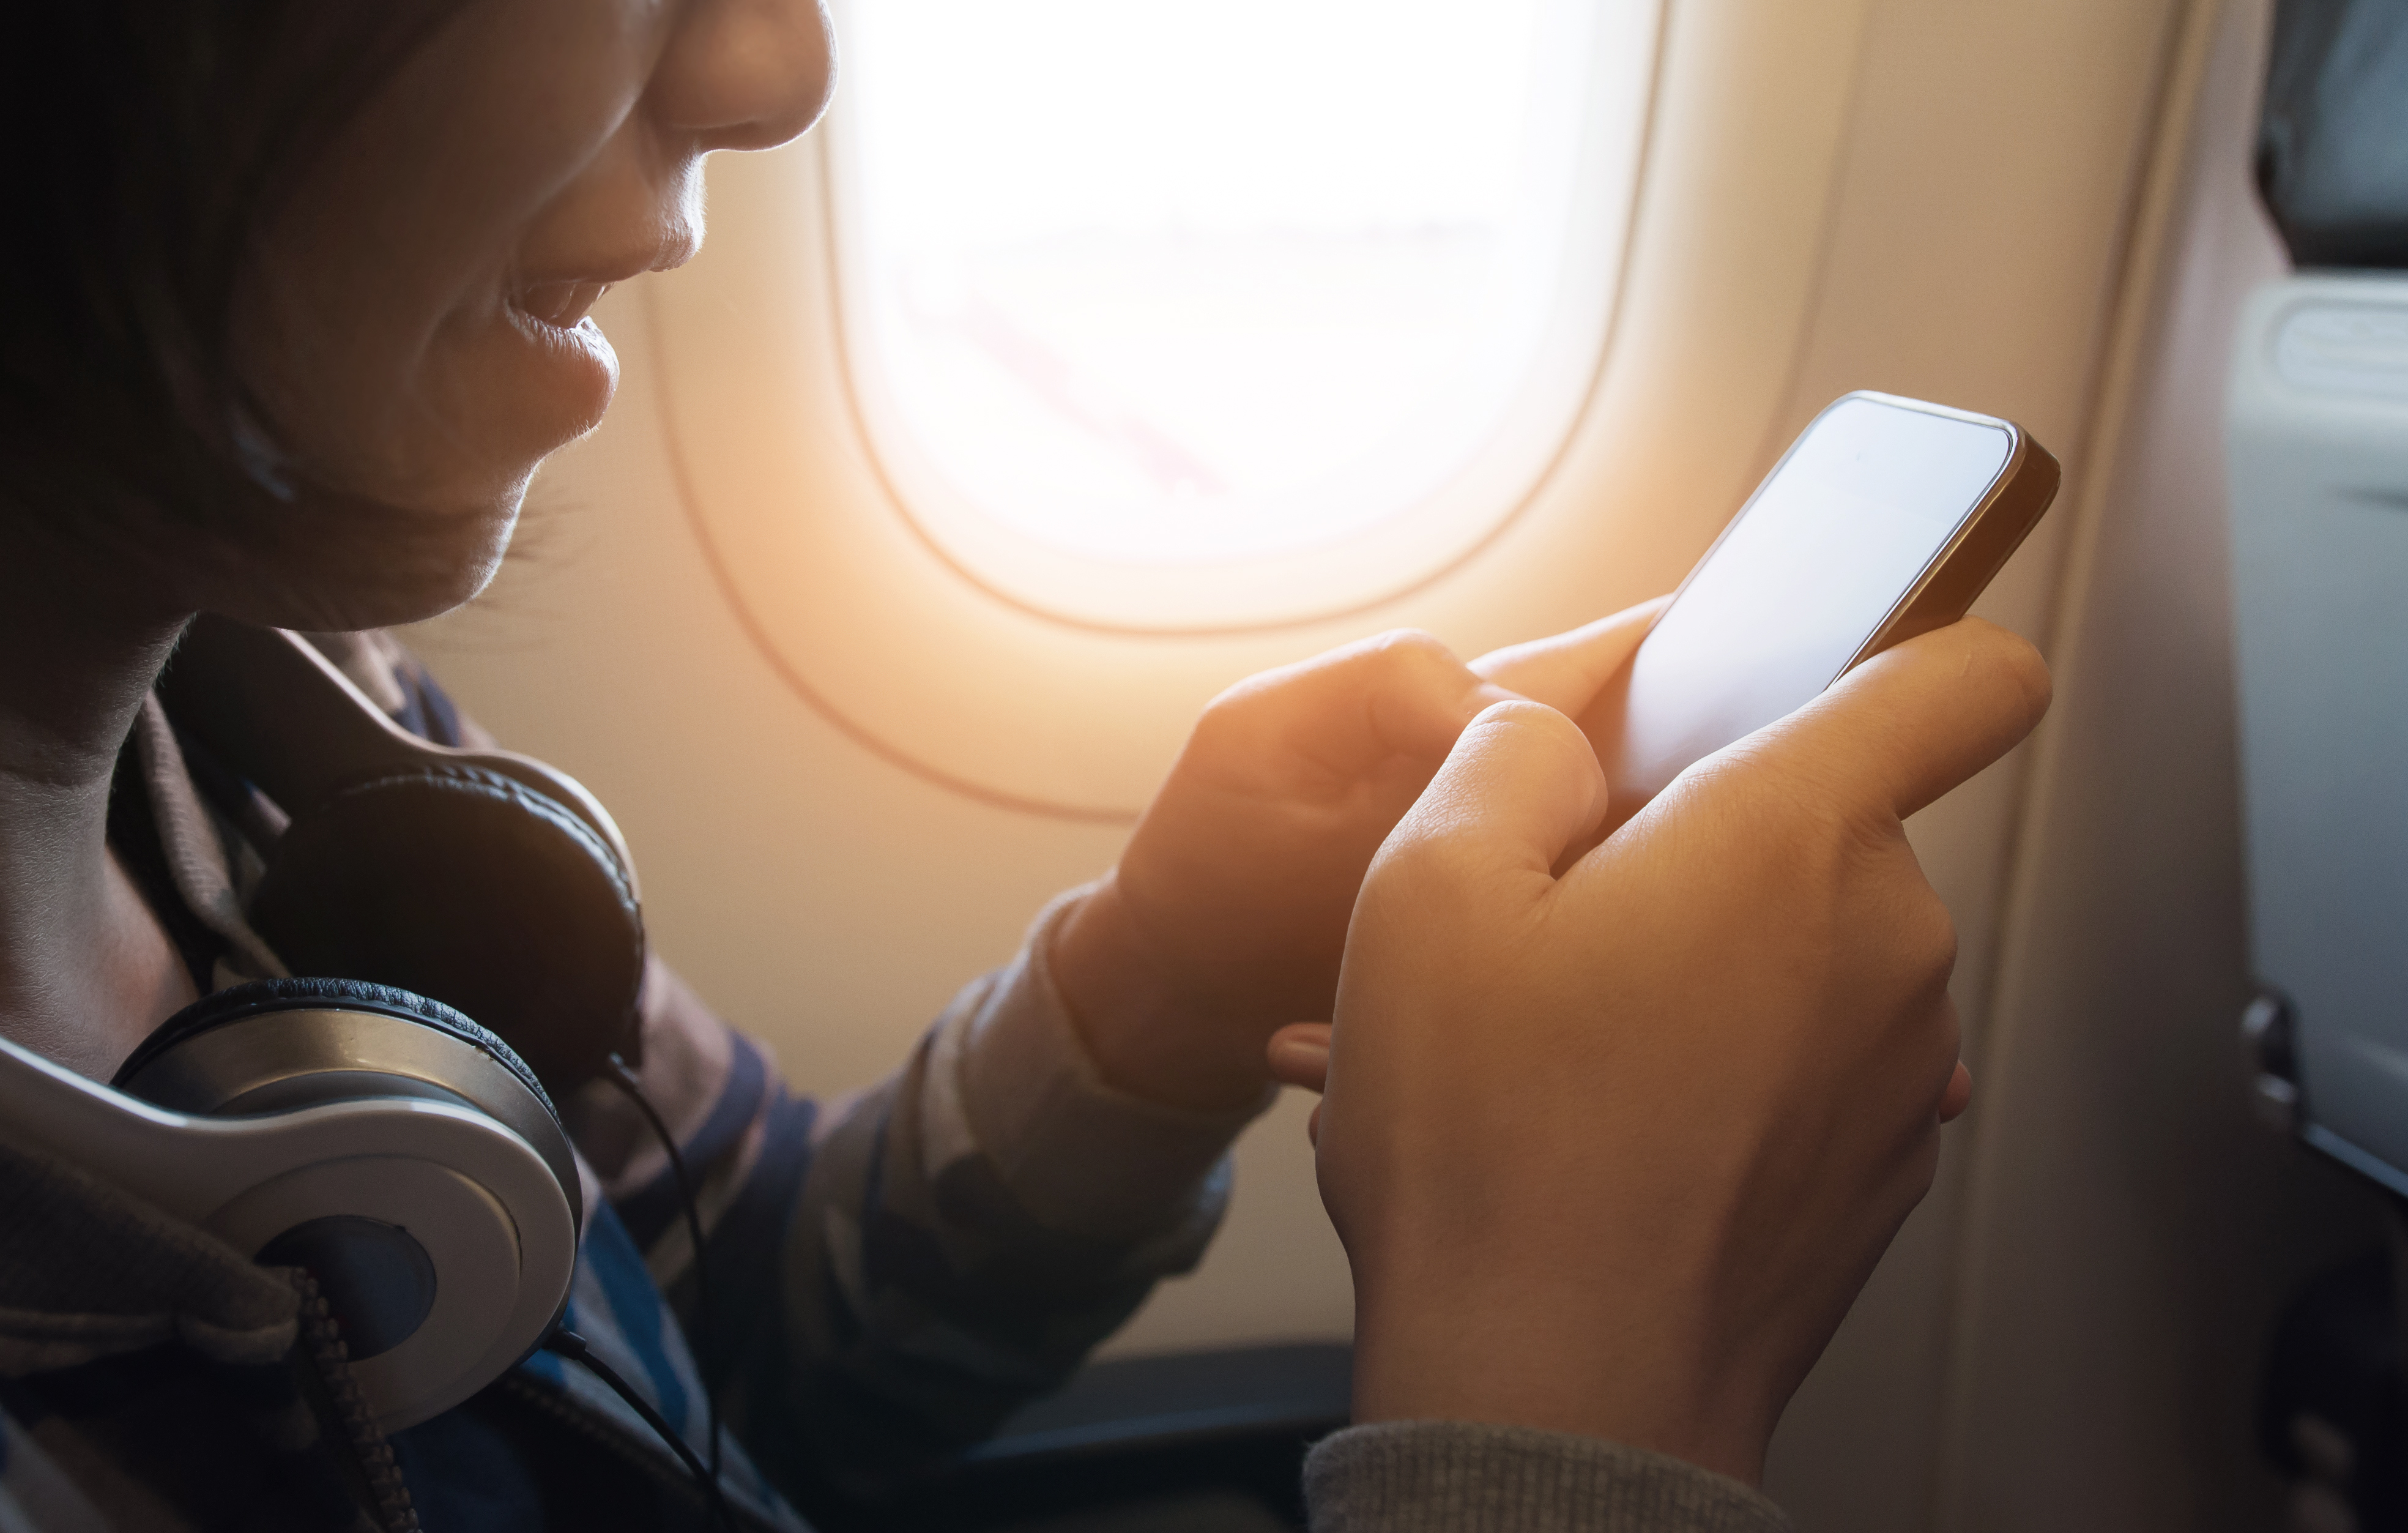 Aerolínea permite usar whatsapp y facebook durante sus vuelos, ¡gratis!